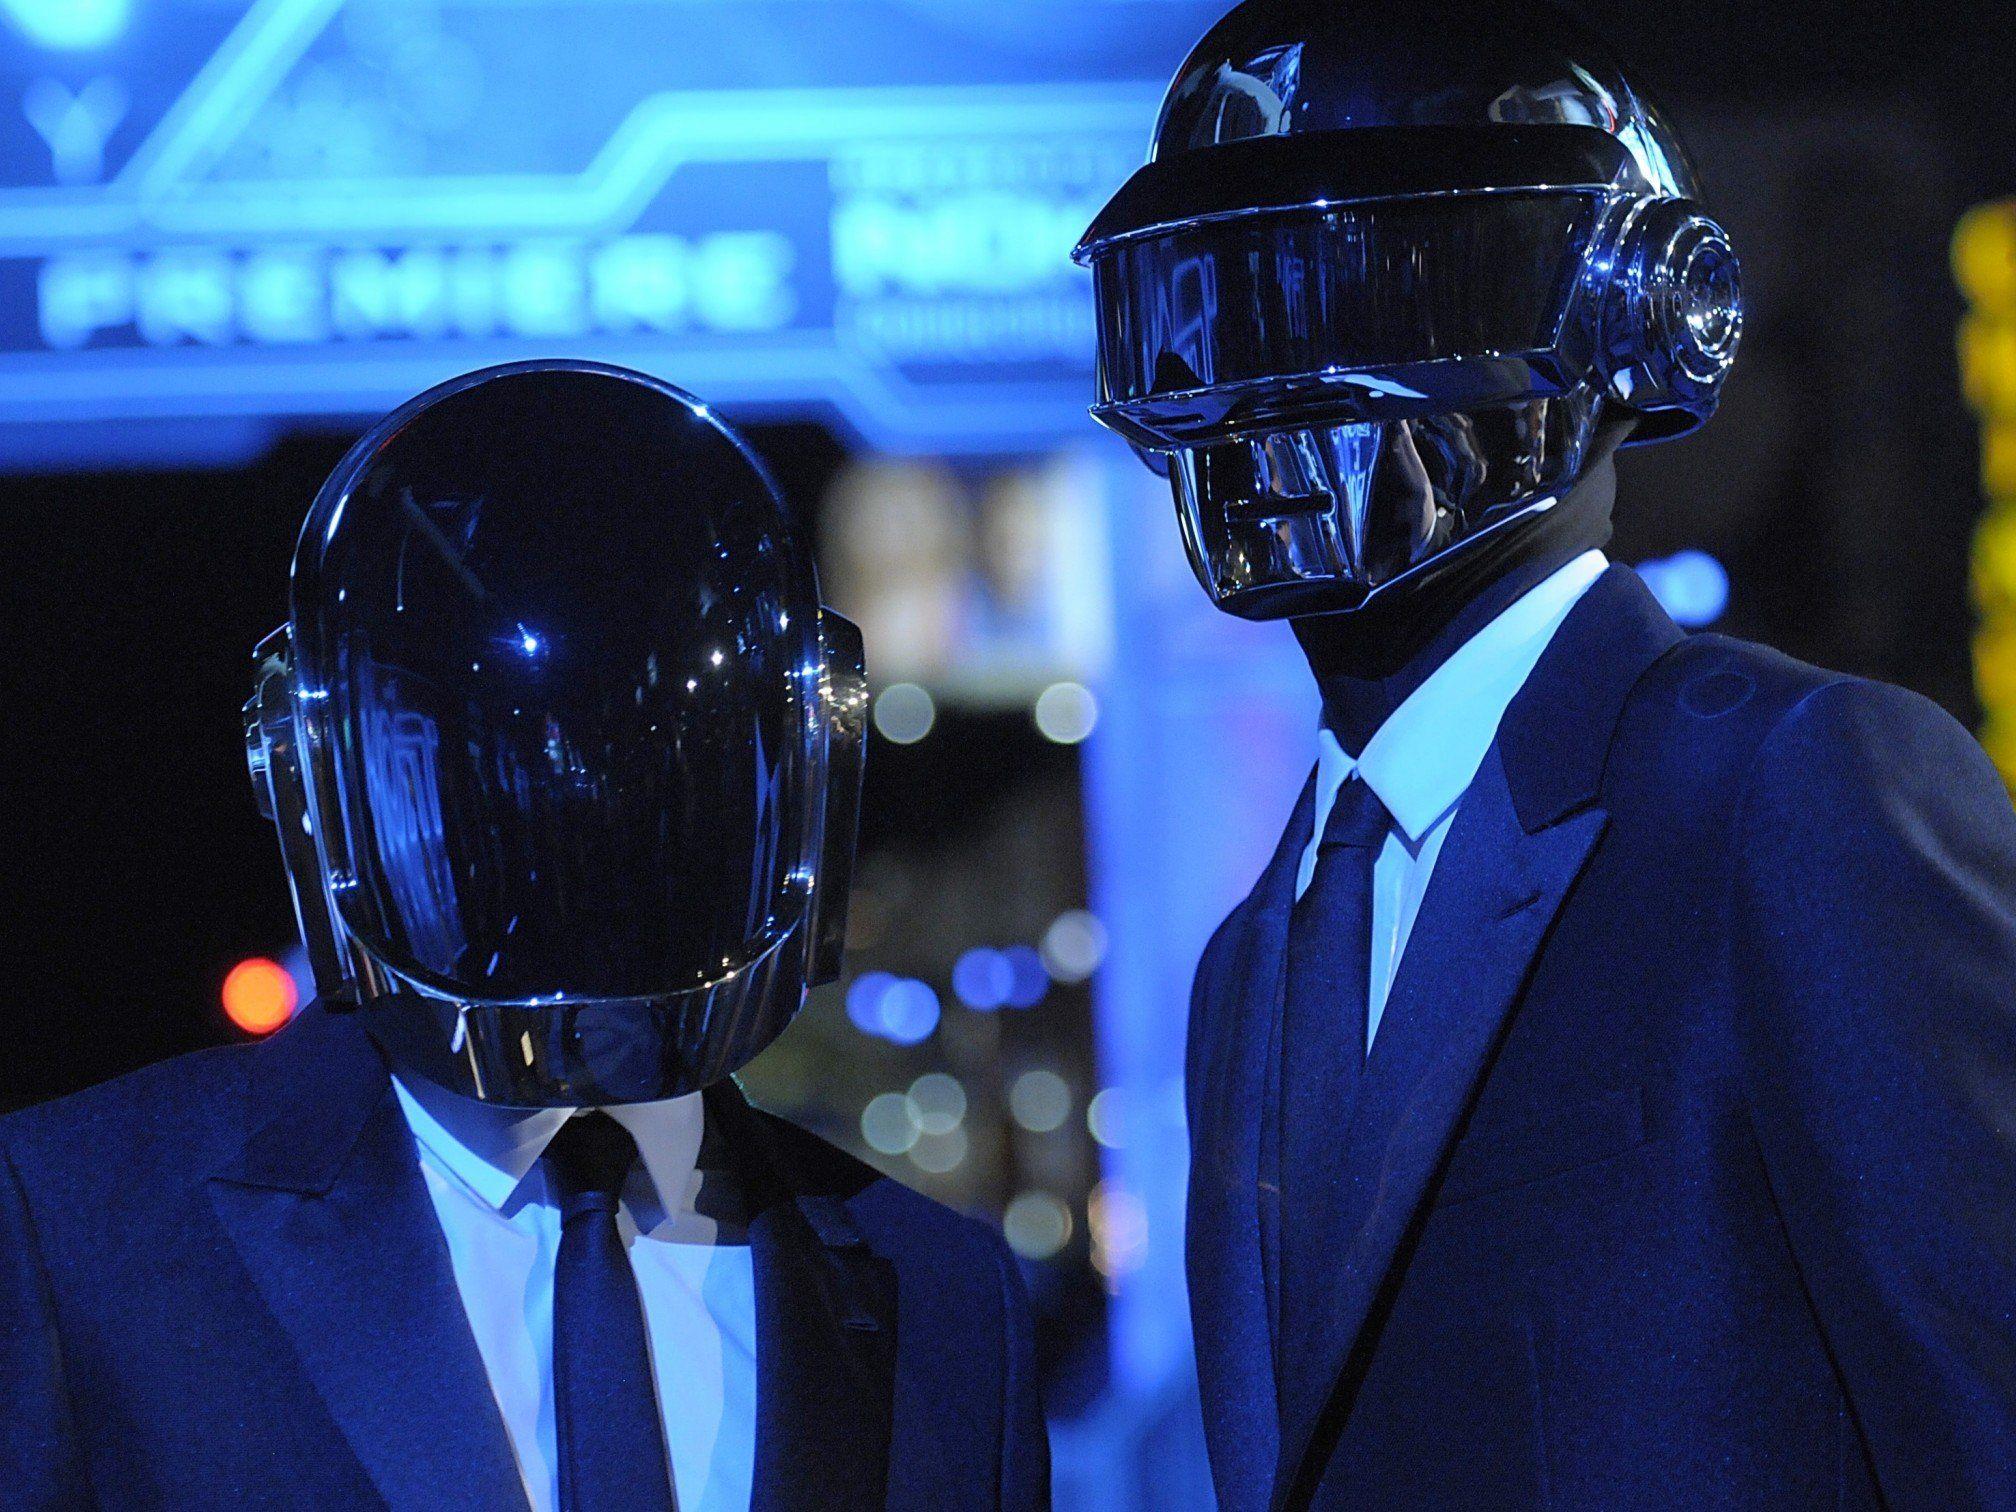 Die Helmies sind da! Guy-Manuel de Homem-Christo und Thomas Bangalter von Daft Punk